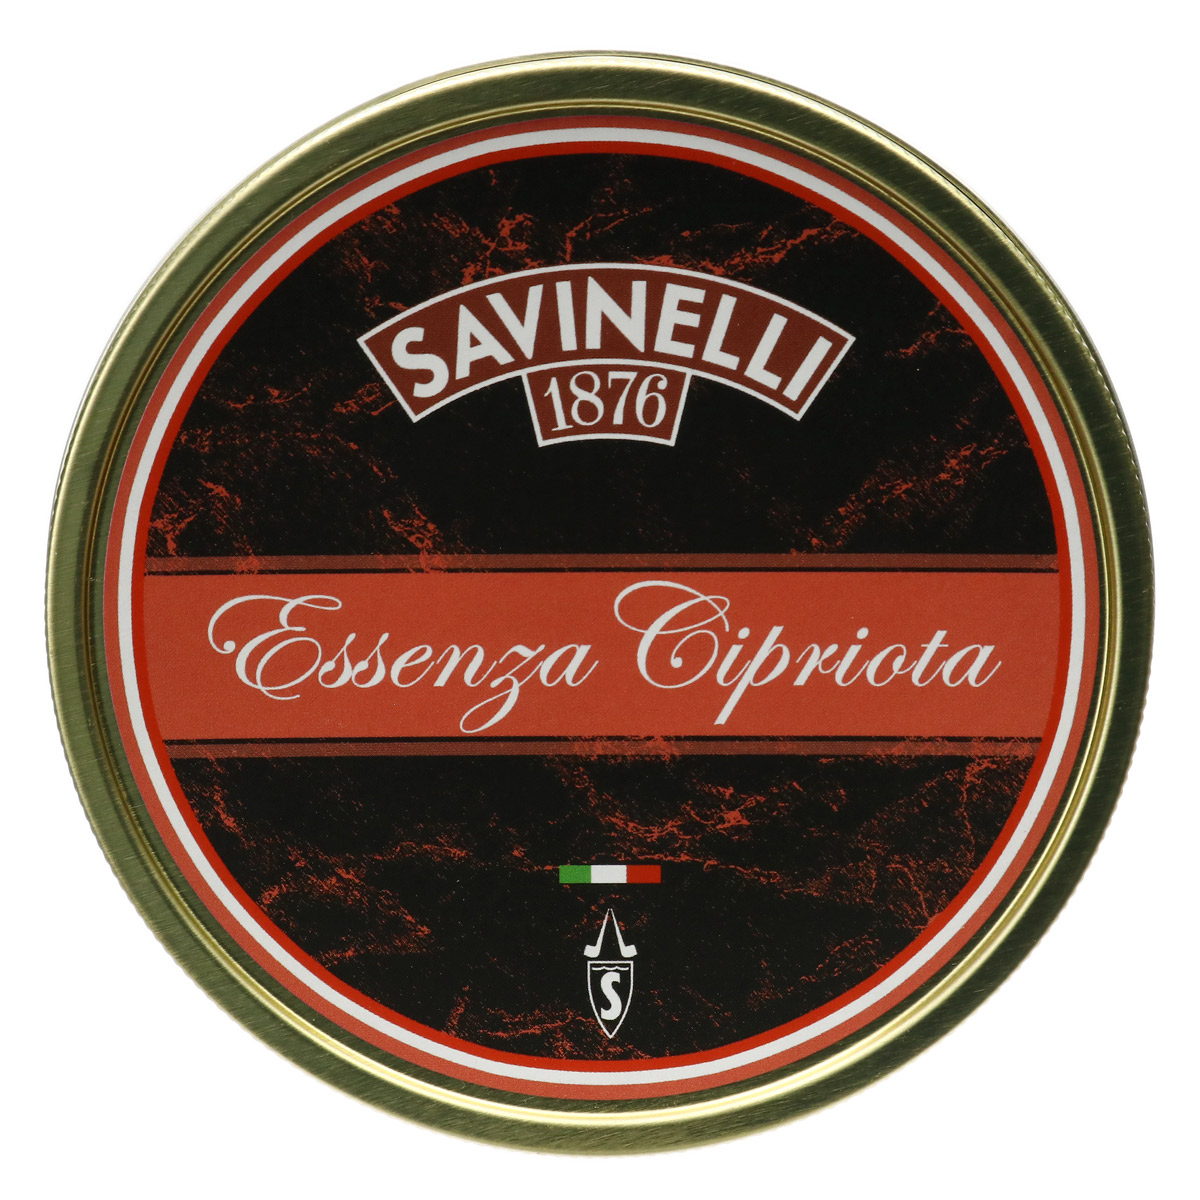 Savinelli Essenza Cipriota 100g